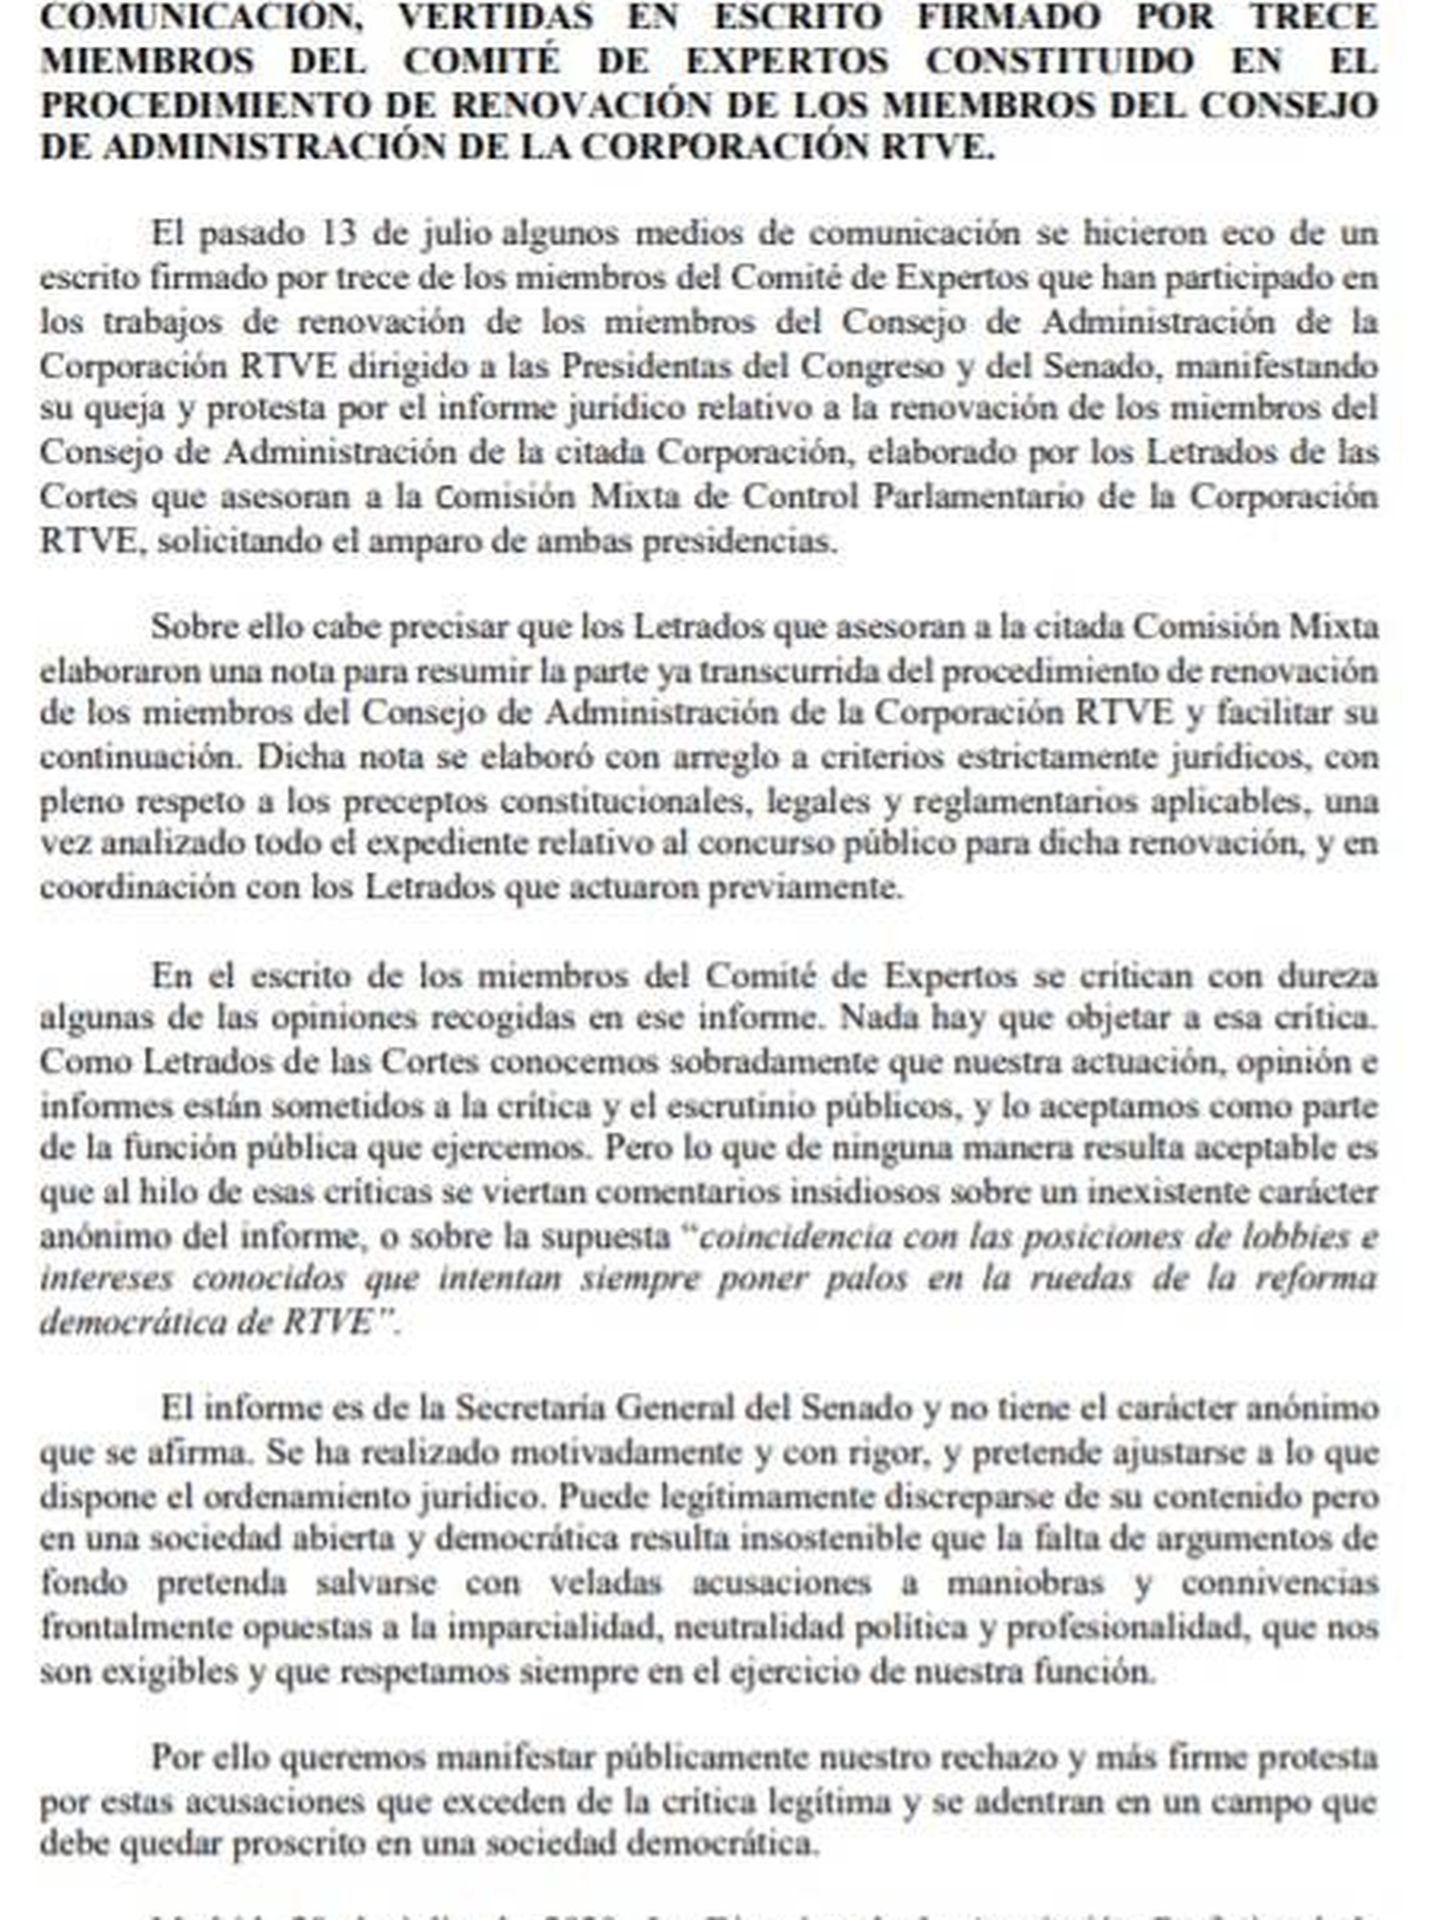 Consulte aquí en PDF la declaración pública de la Asociación Profesional de los Letrados de las Cortes Generales contra los firmantes del comité de expertos de RTVE. 